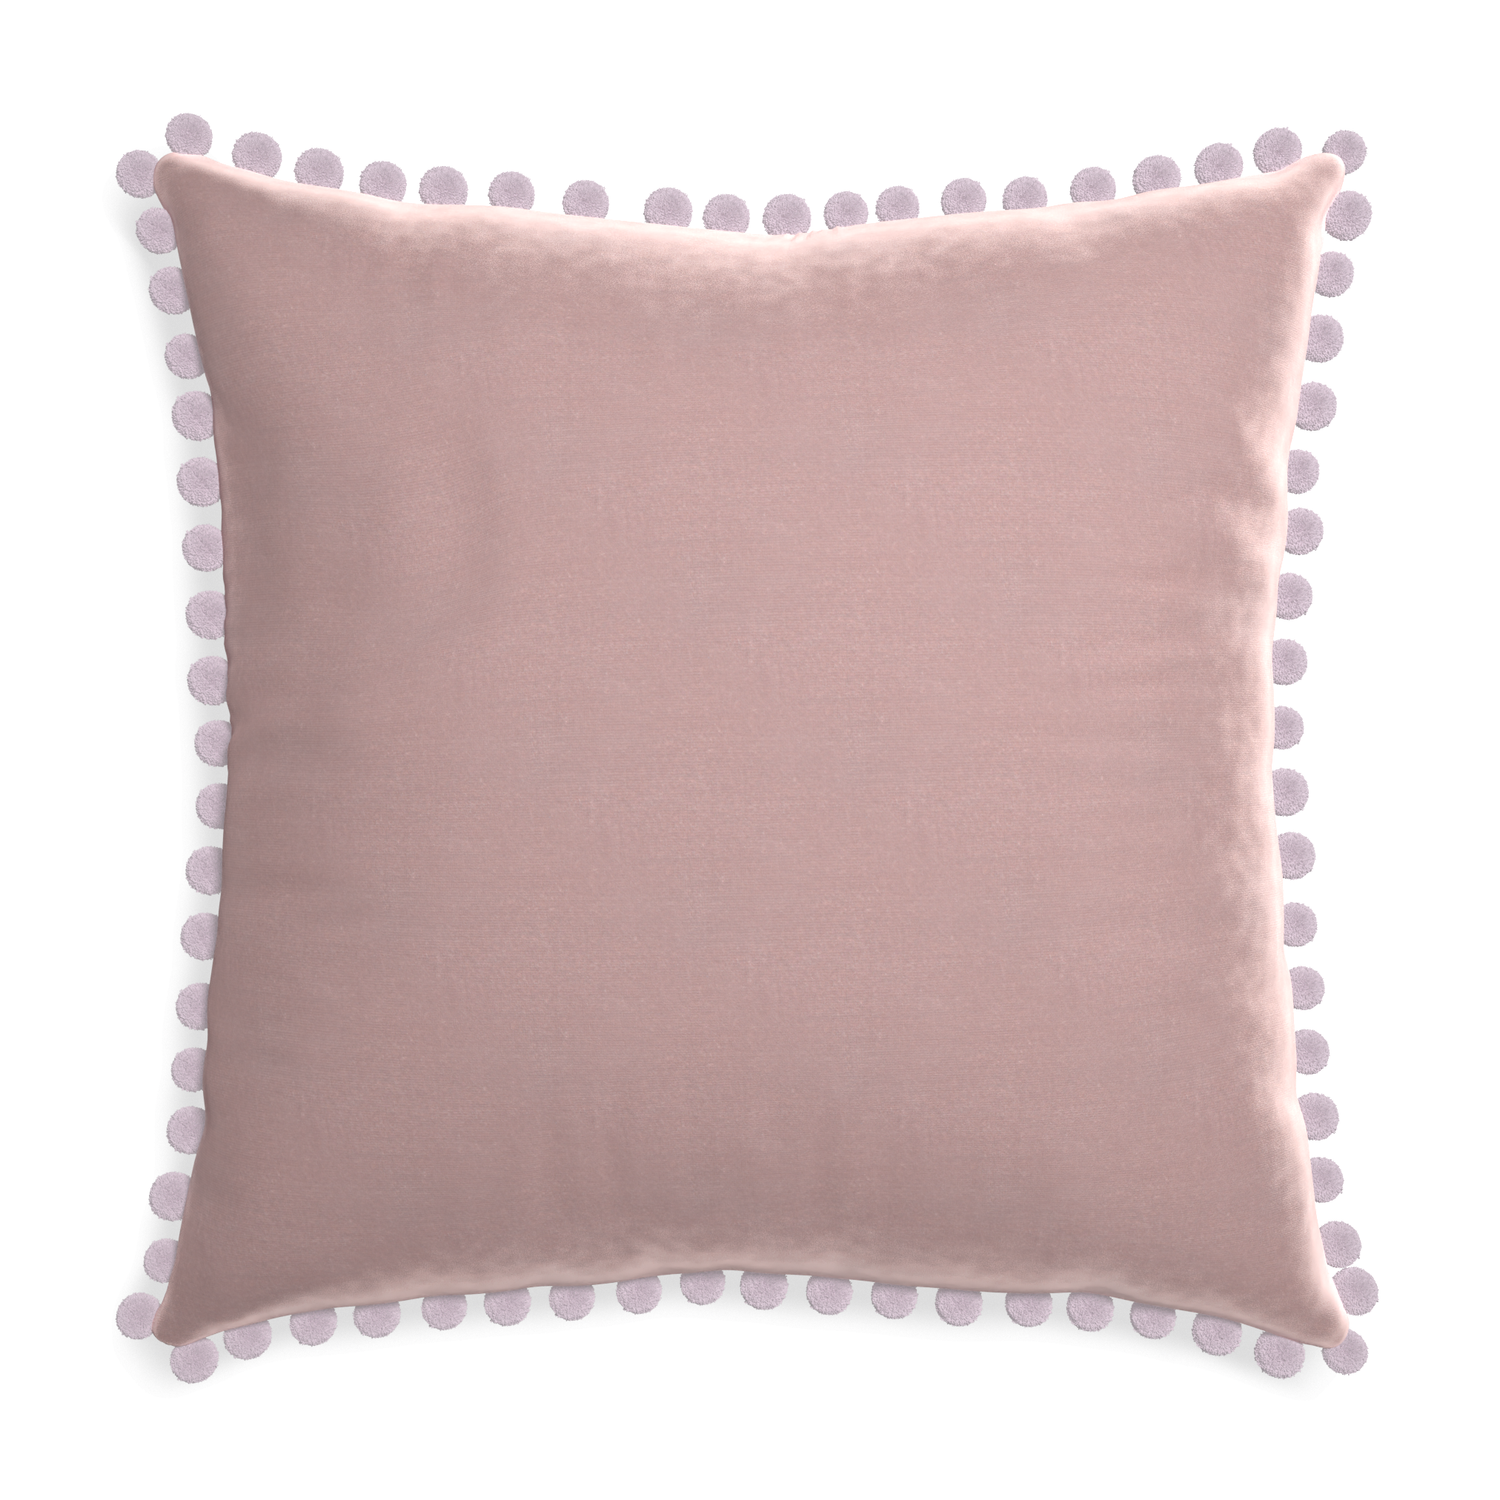 Euro-sham mauve velvet custom pillow with l on white background